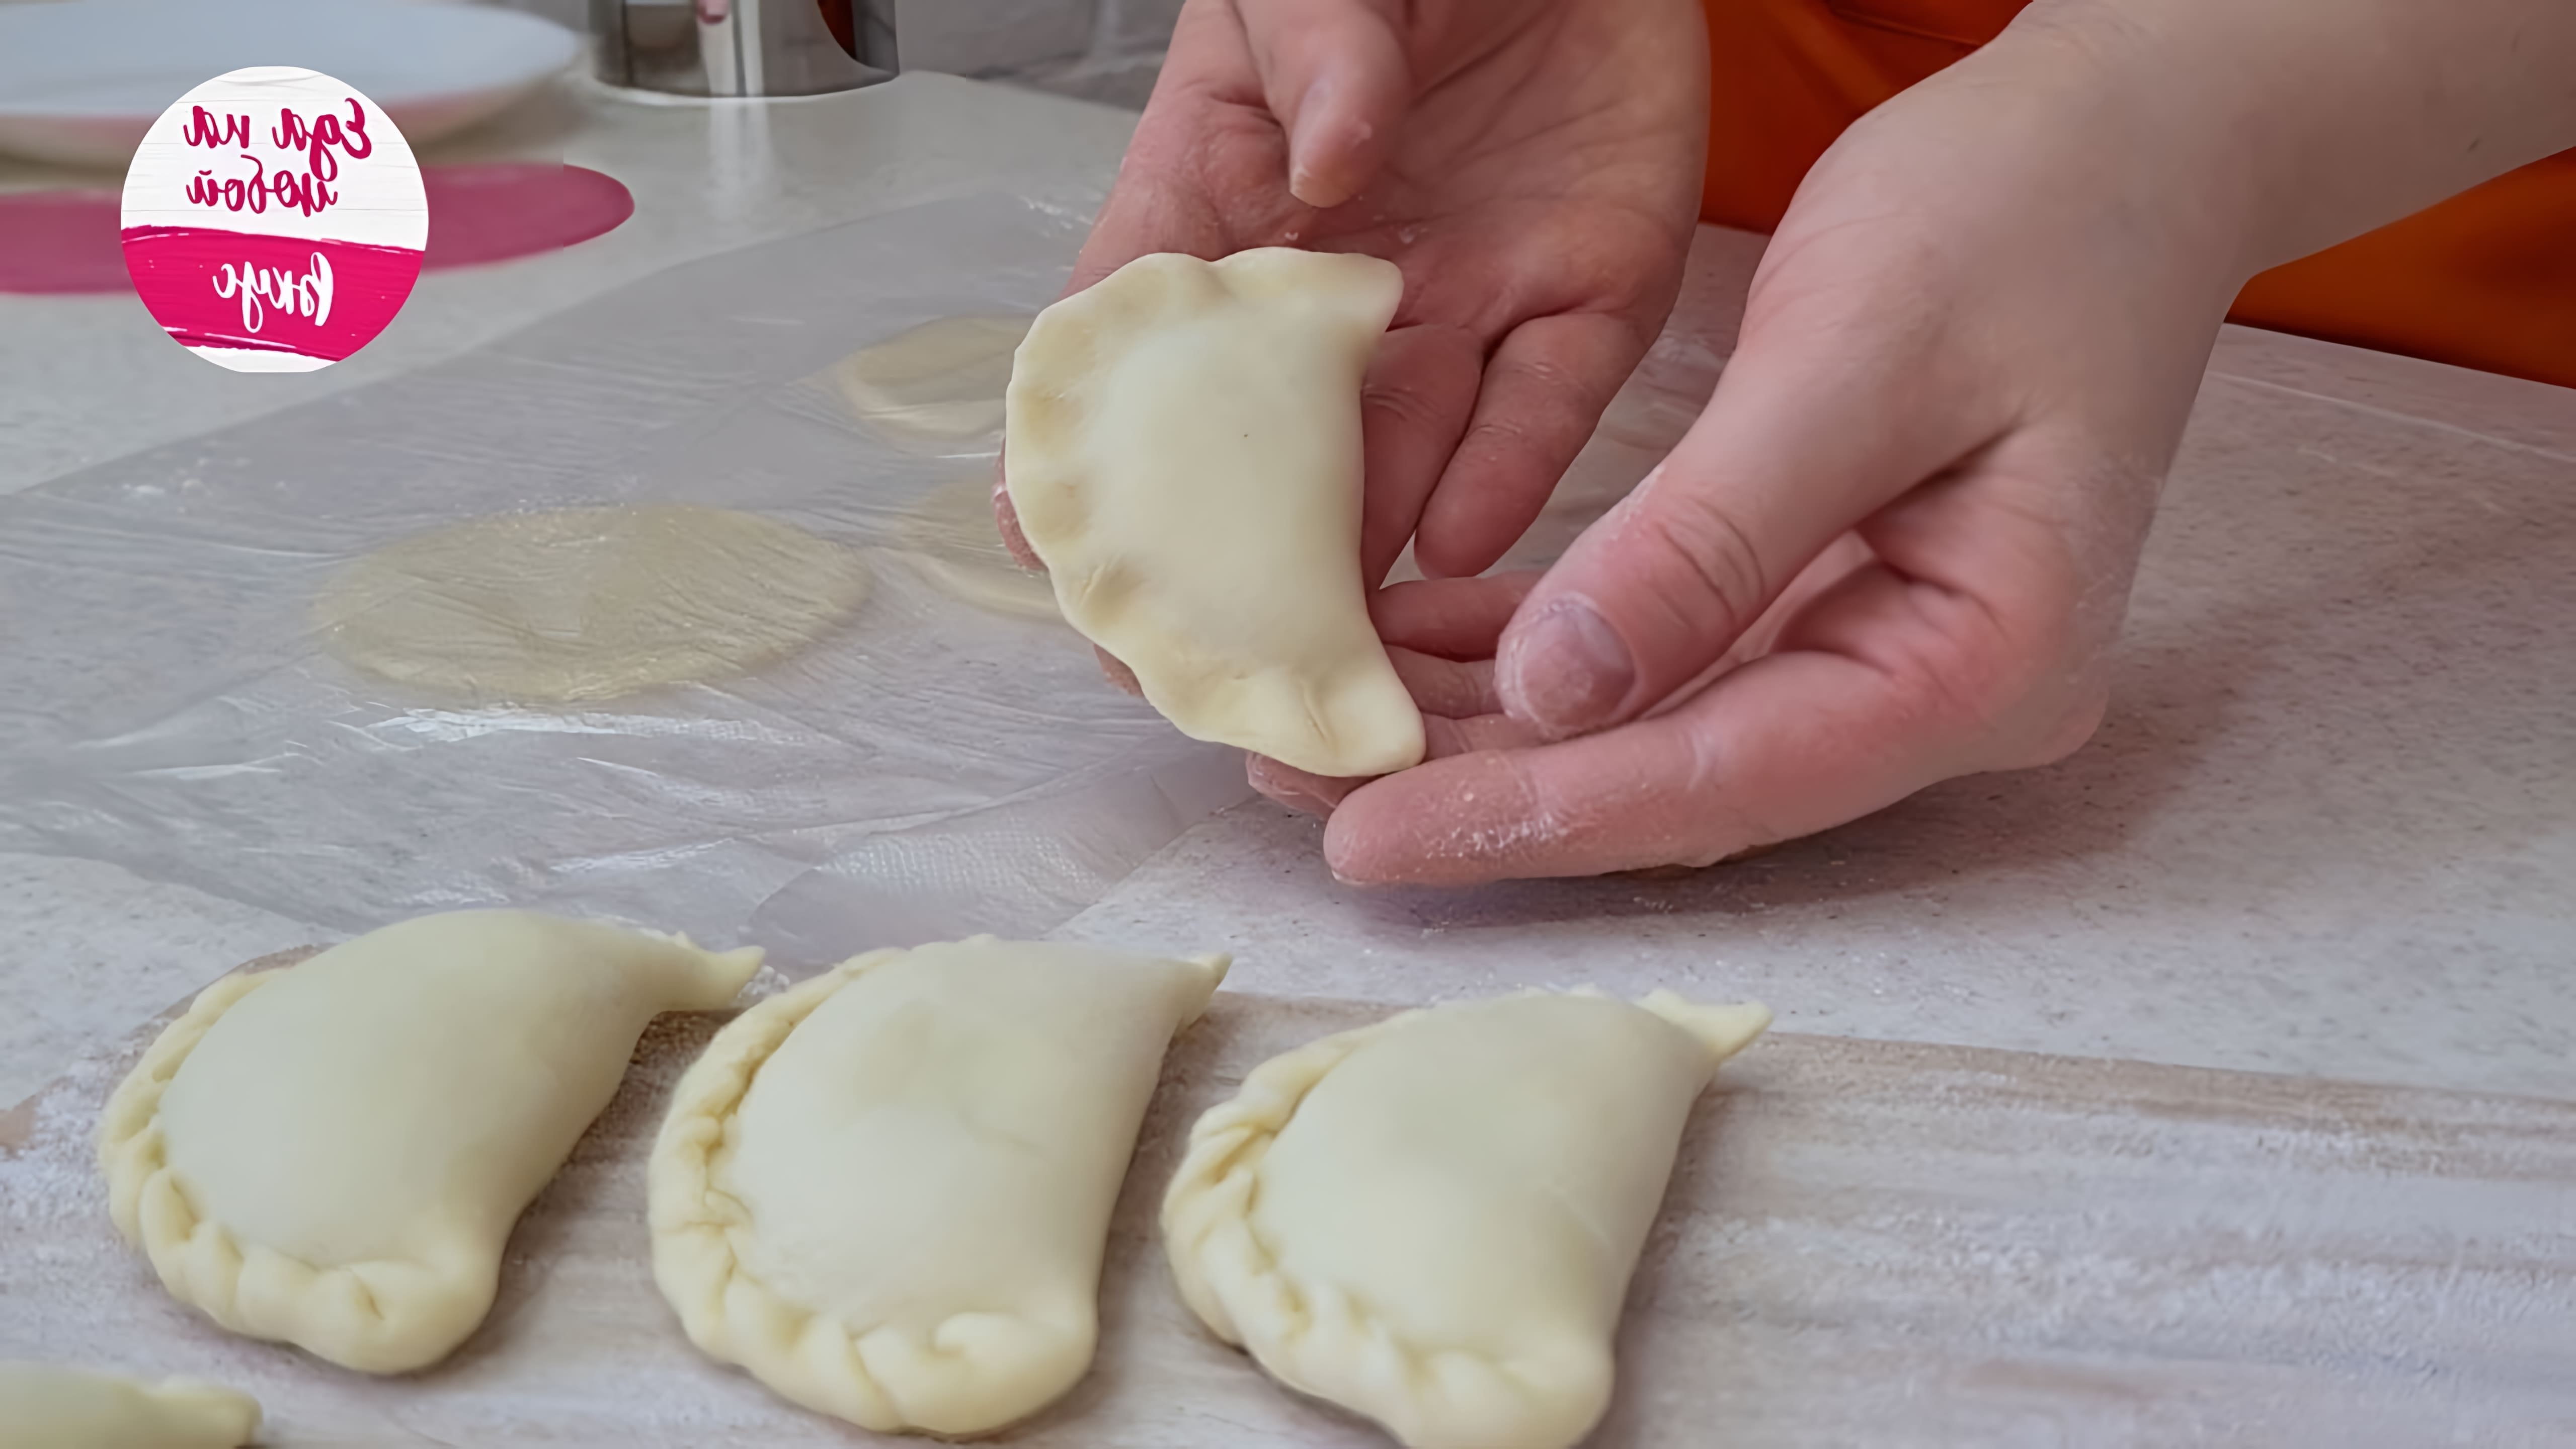 В этом видео Анастасия показывает, как приготовить уральские посикунчики - маленькие пирожки с большим количеством начинки и сока